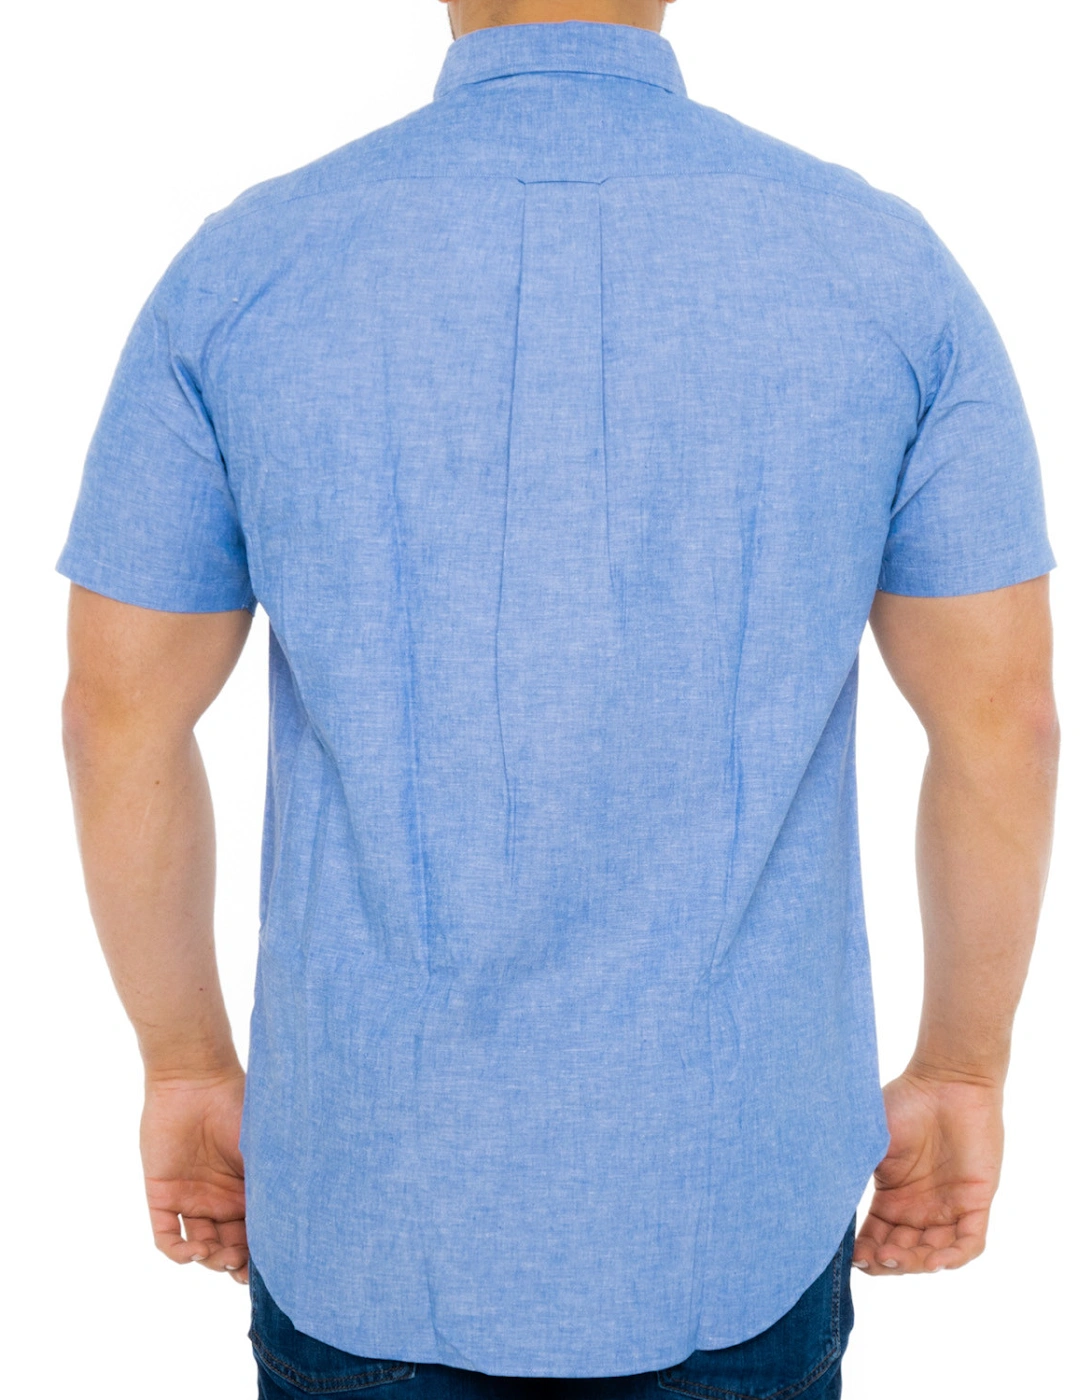 Mens Cotton & Linen Short Sleeve Shirt (Blue)